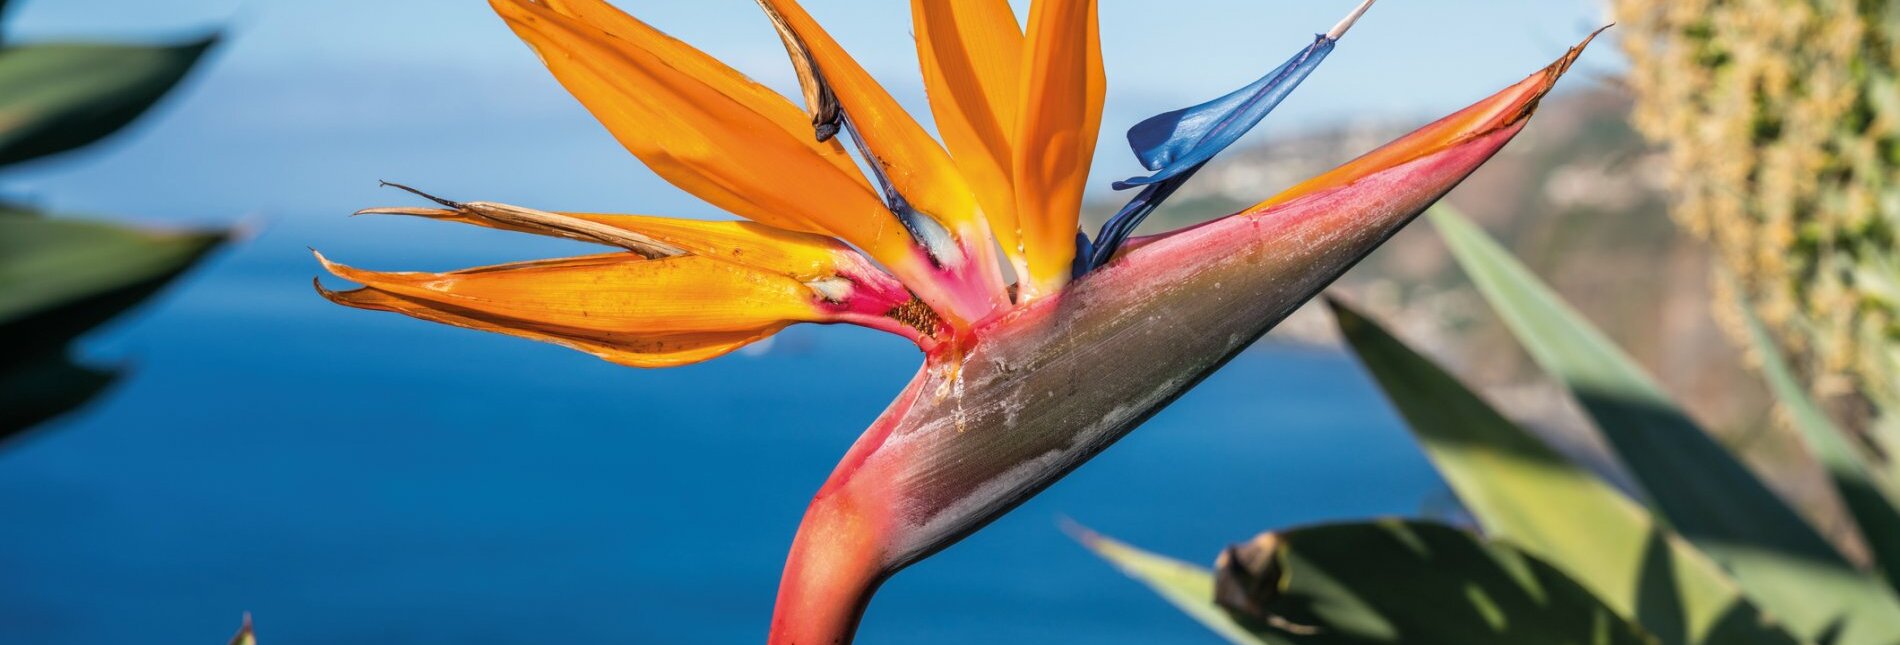 Strelitzien - Paradiesvogel-Blume